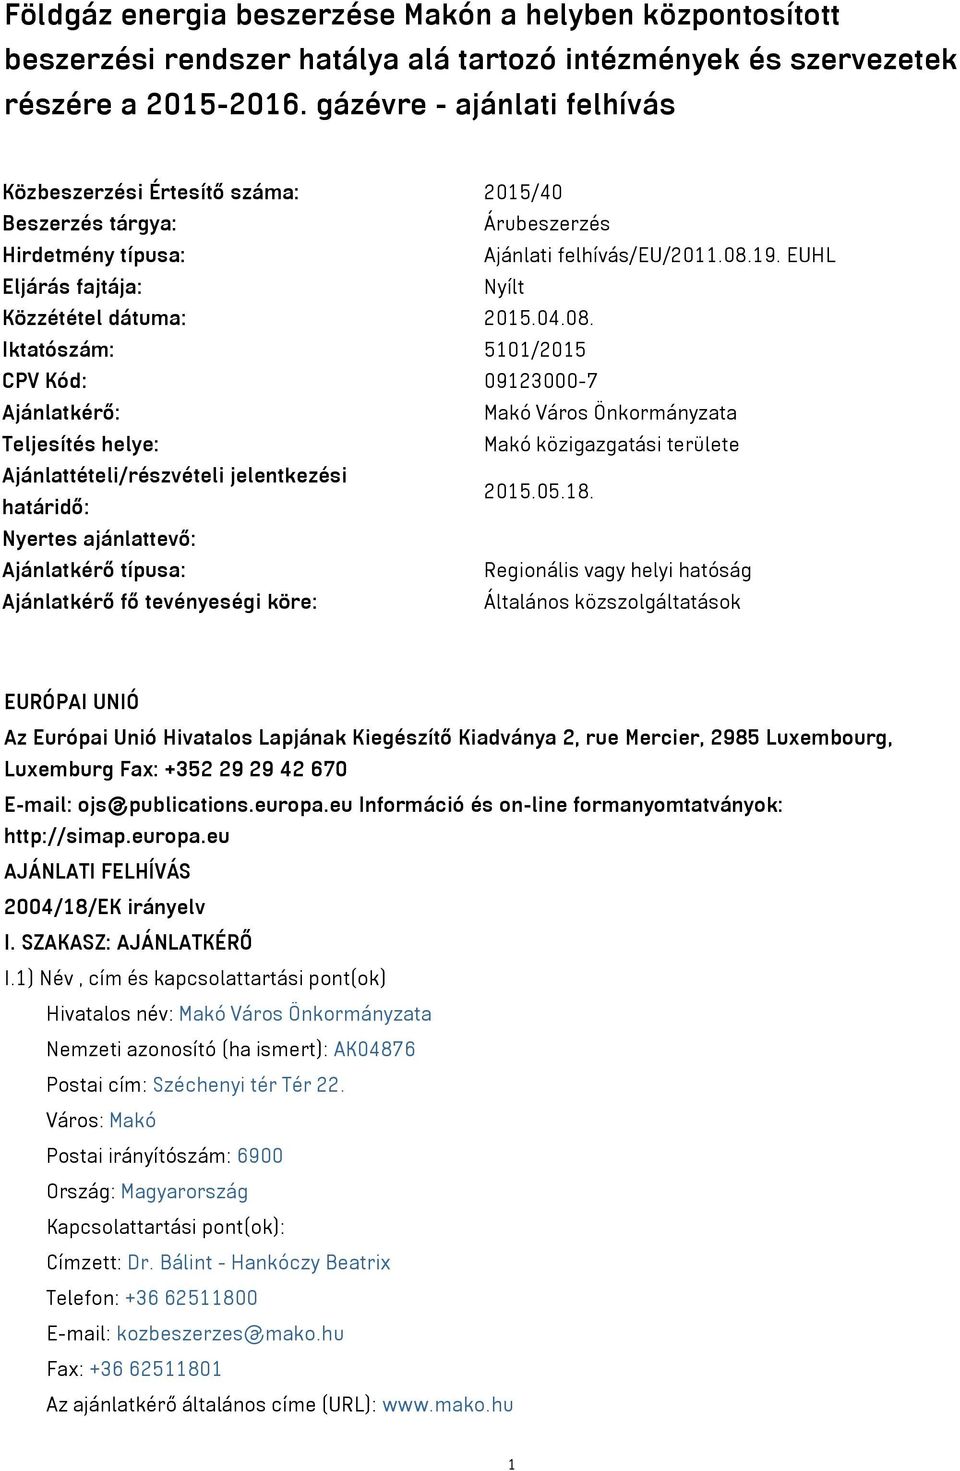 EUHL Eljárás fajtája: Nyílt Közzététel dátuma: 2015.04.08.